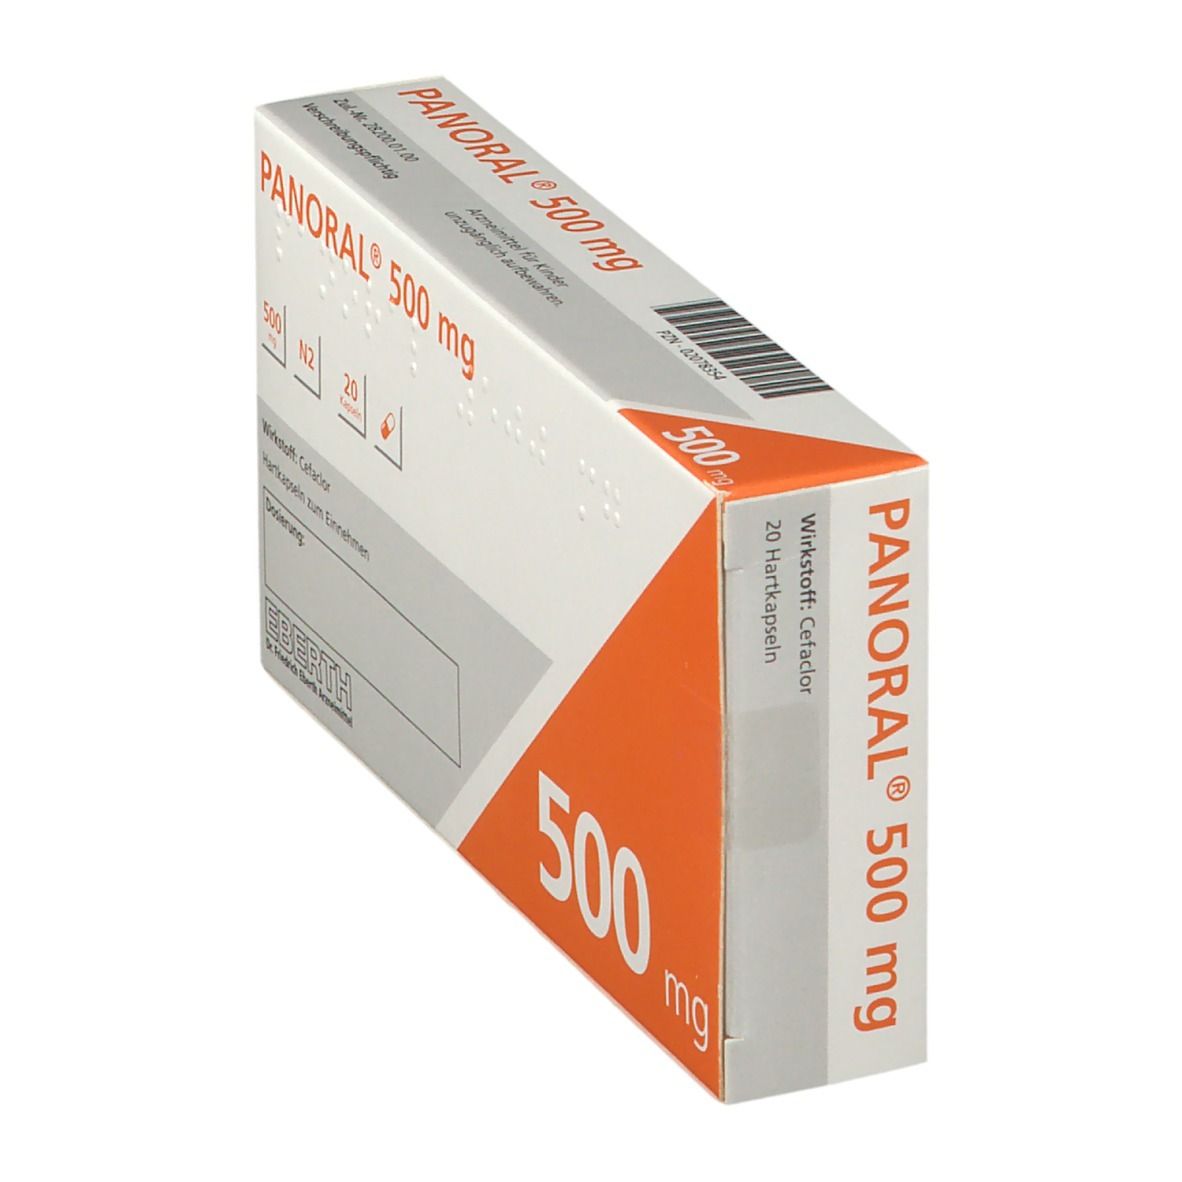 Panoral® 500 mg